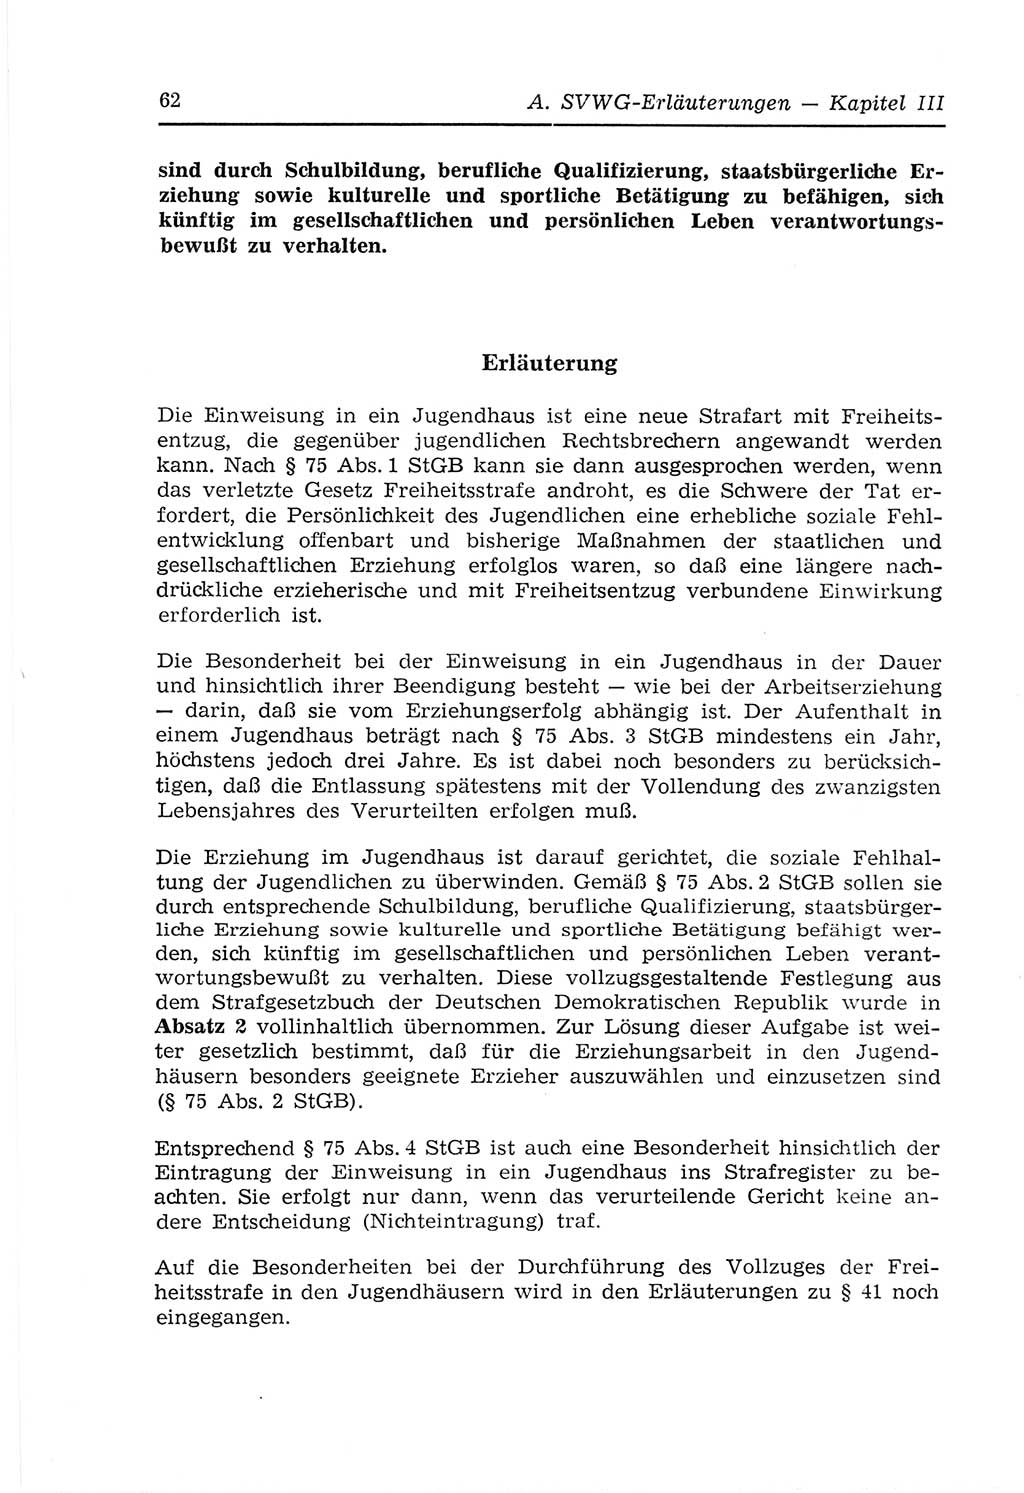 Strafvollzugs- und Wiedereingliederungsgesetz (SVWG) der Deutschen Demokratischen Republik (DDR) 1968, Seite 62 (SVWG DDR 1968, S. 62)